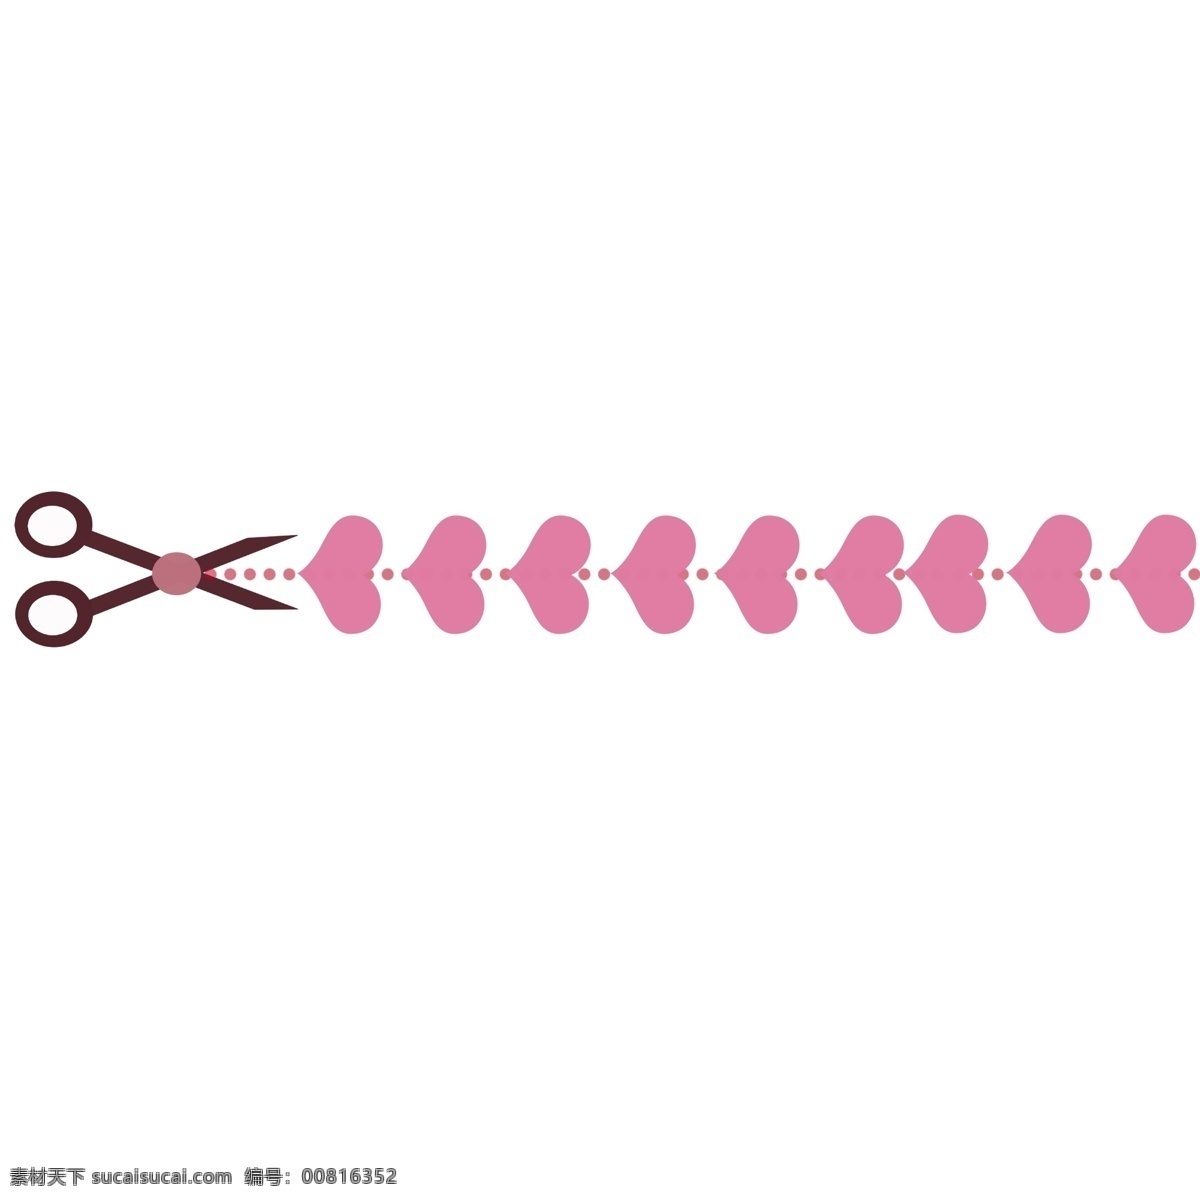 卡通 剪子 分割线 插画 心形分割线 粉红色心形 粉色 圆点 直线分割线 装饰分割线 剪子分割线 精美分割线